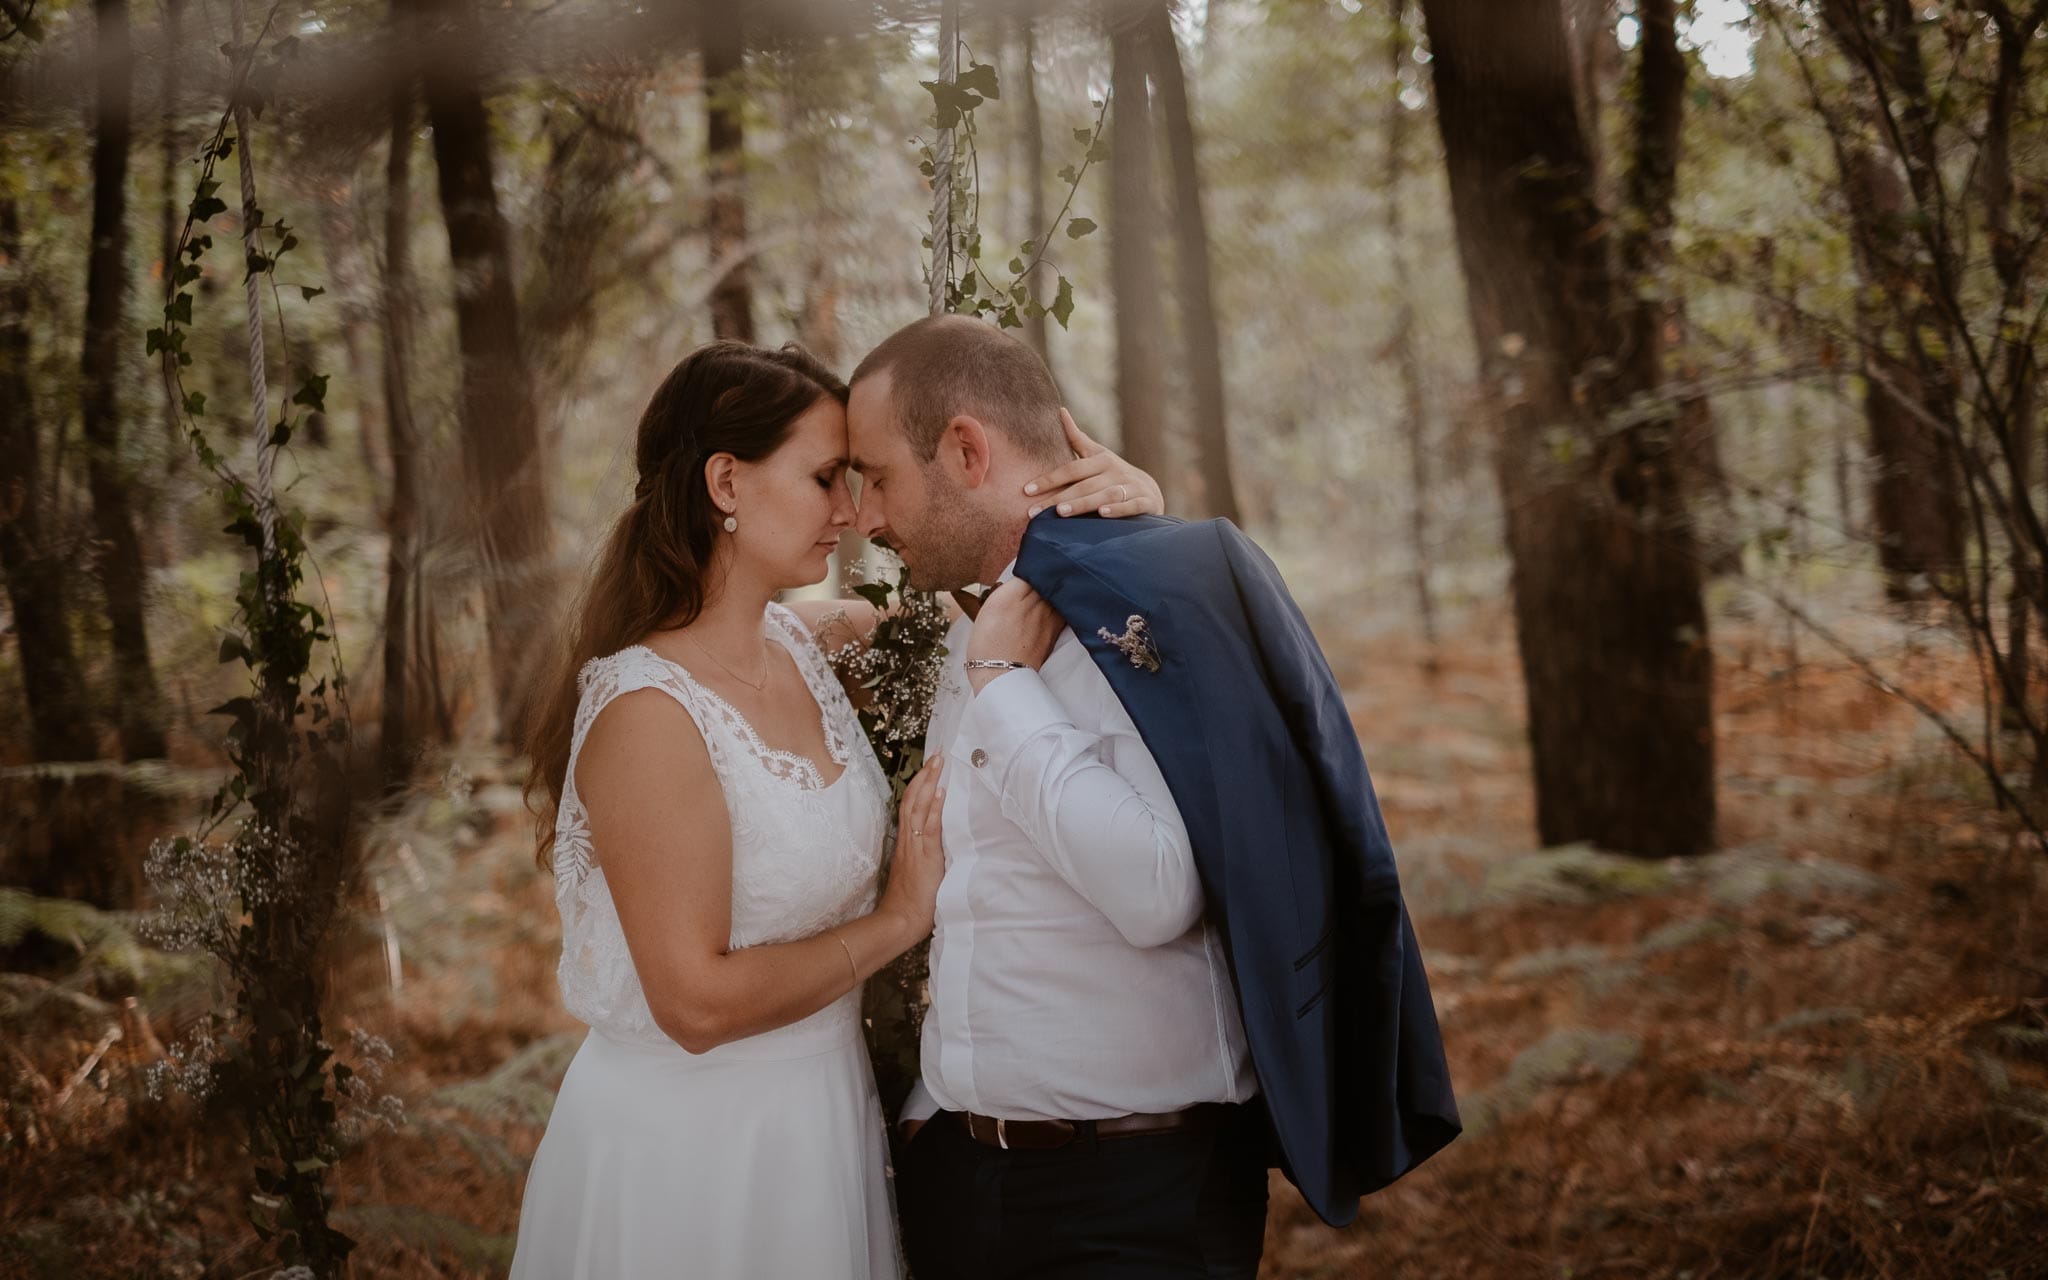 Séance couple après mariage naturelle et romantique dans une forêt en Vendée par Geoffrey Arnoldy photographe